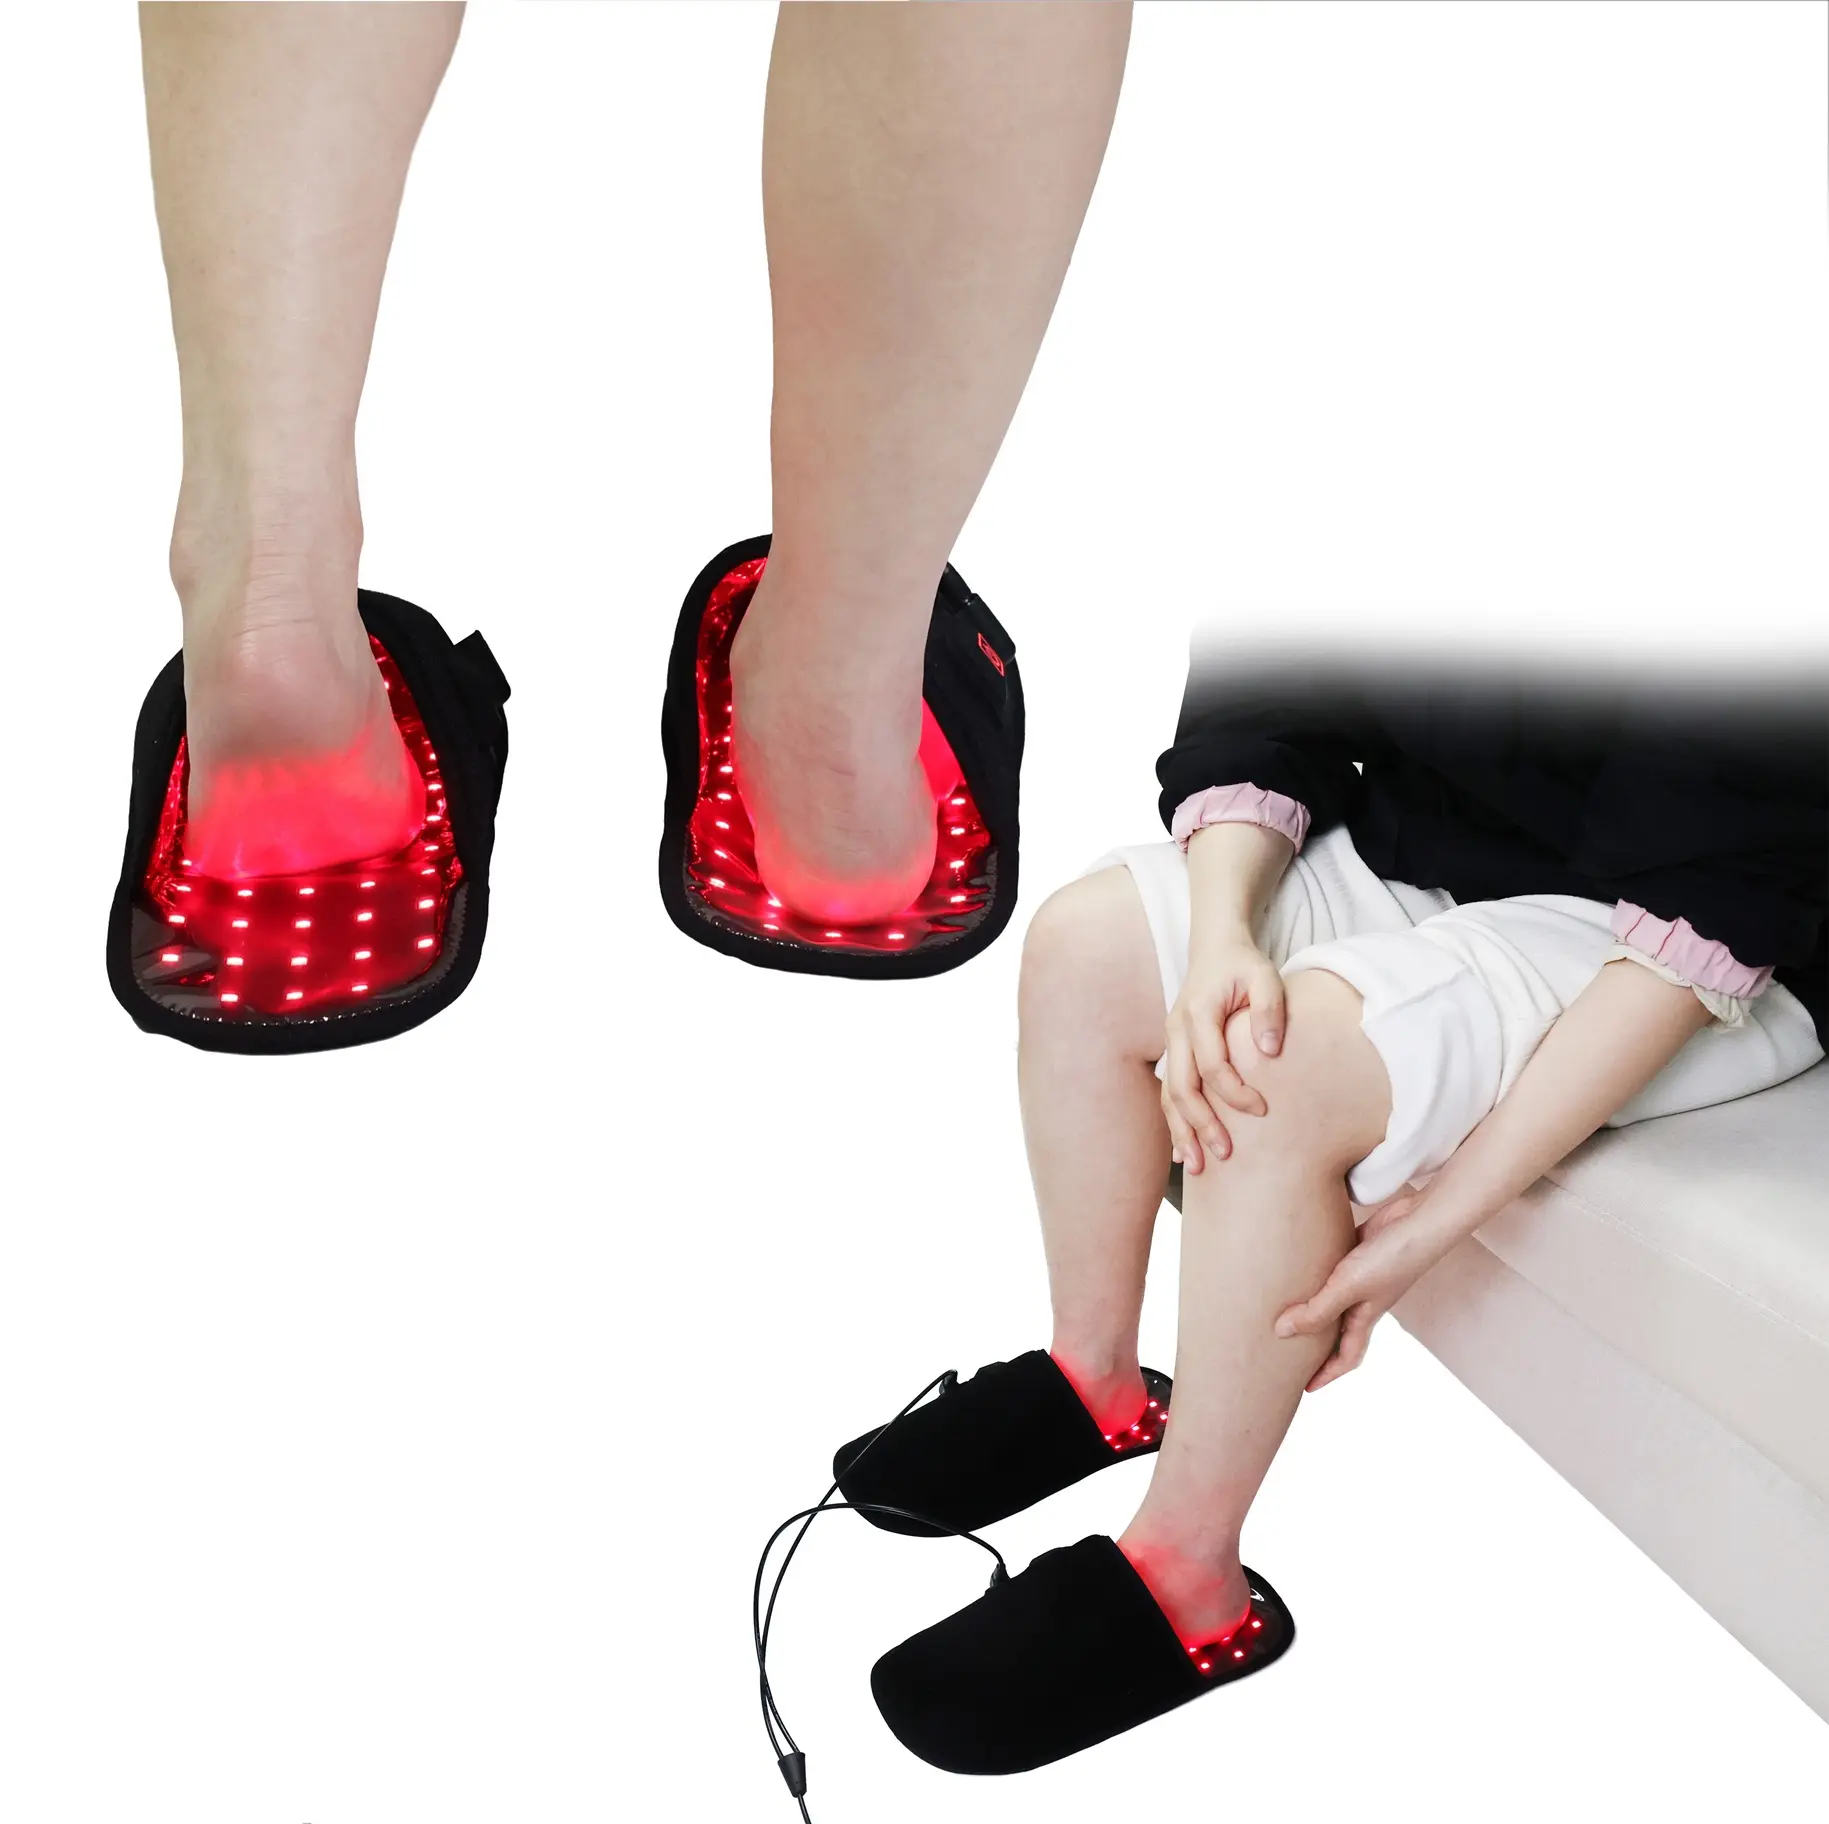 सेल मेटाबॉलिज्म को बढ़ावा देता है रक्त परिसंचरण पैर के लिए चीन निर्माता से 4 रंग घरेलू उपयोग रिकवरी रेड लाइट थेरेपी फुट